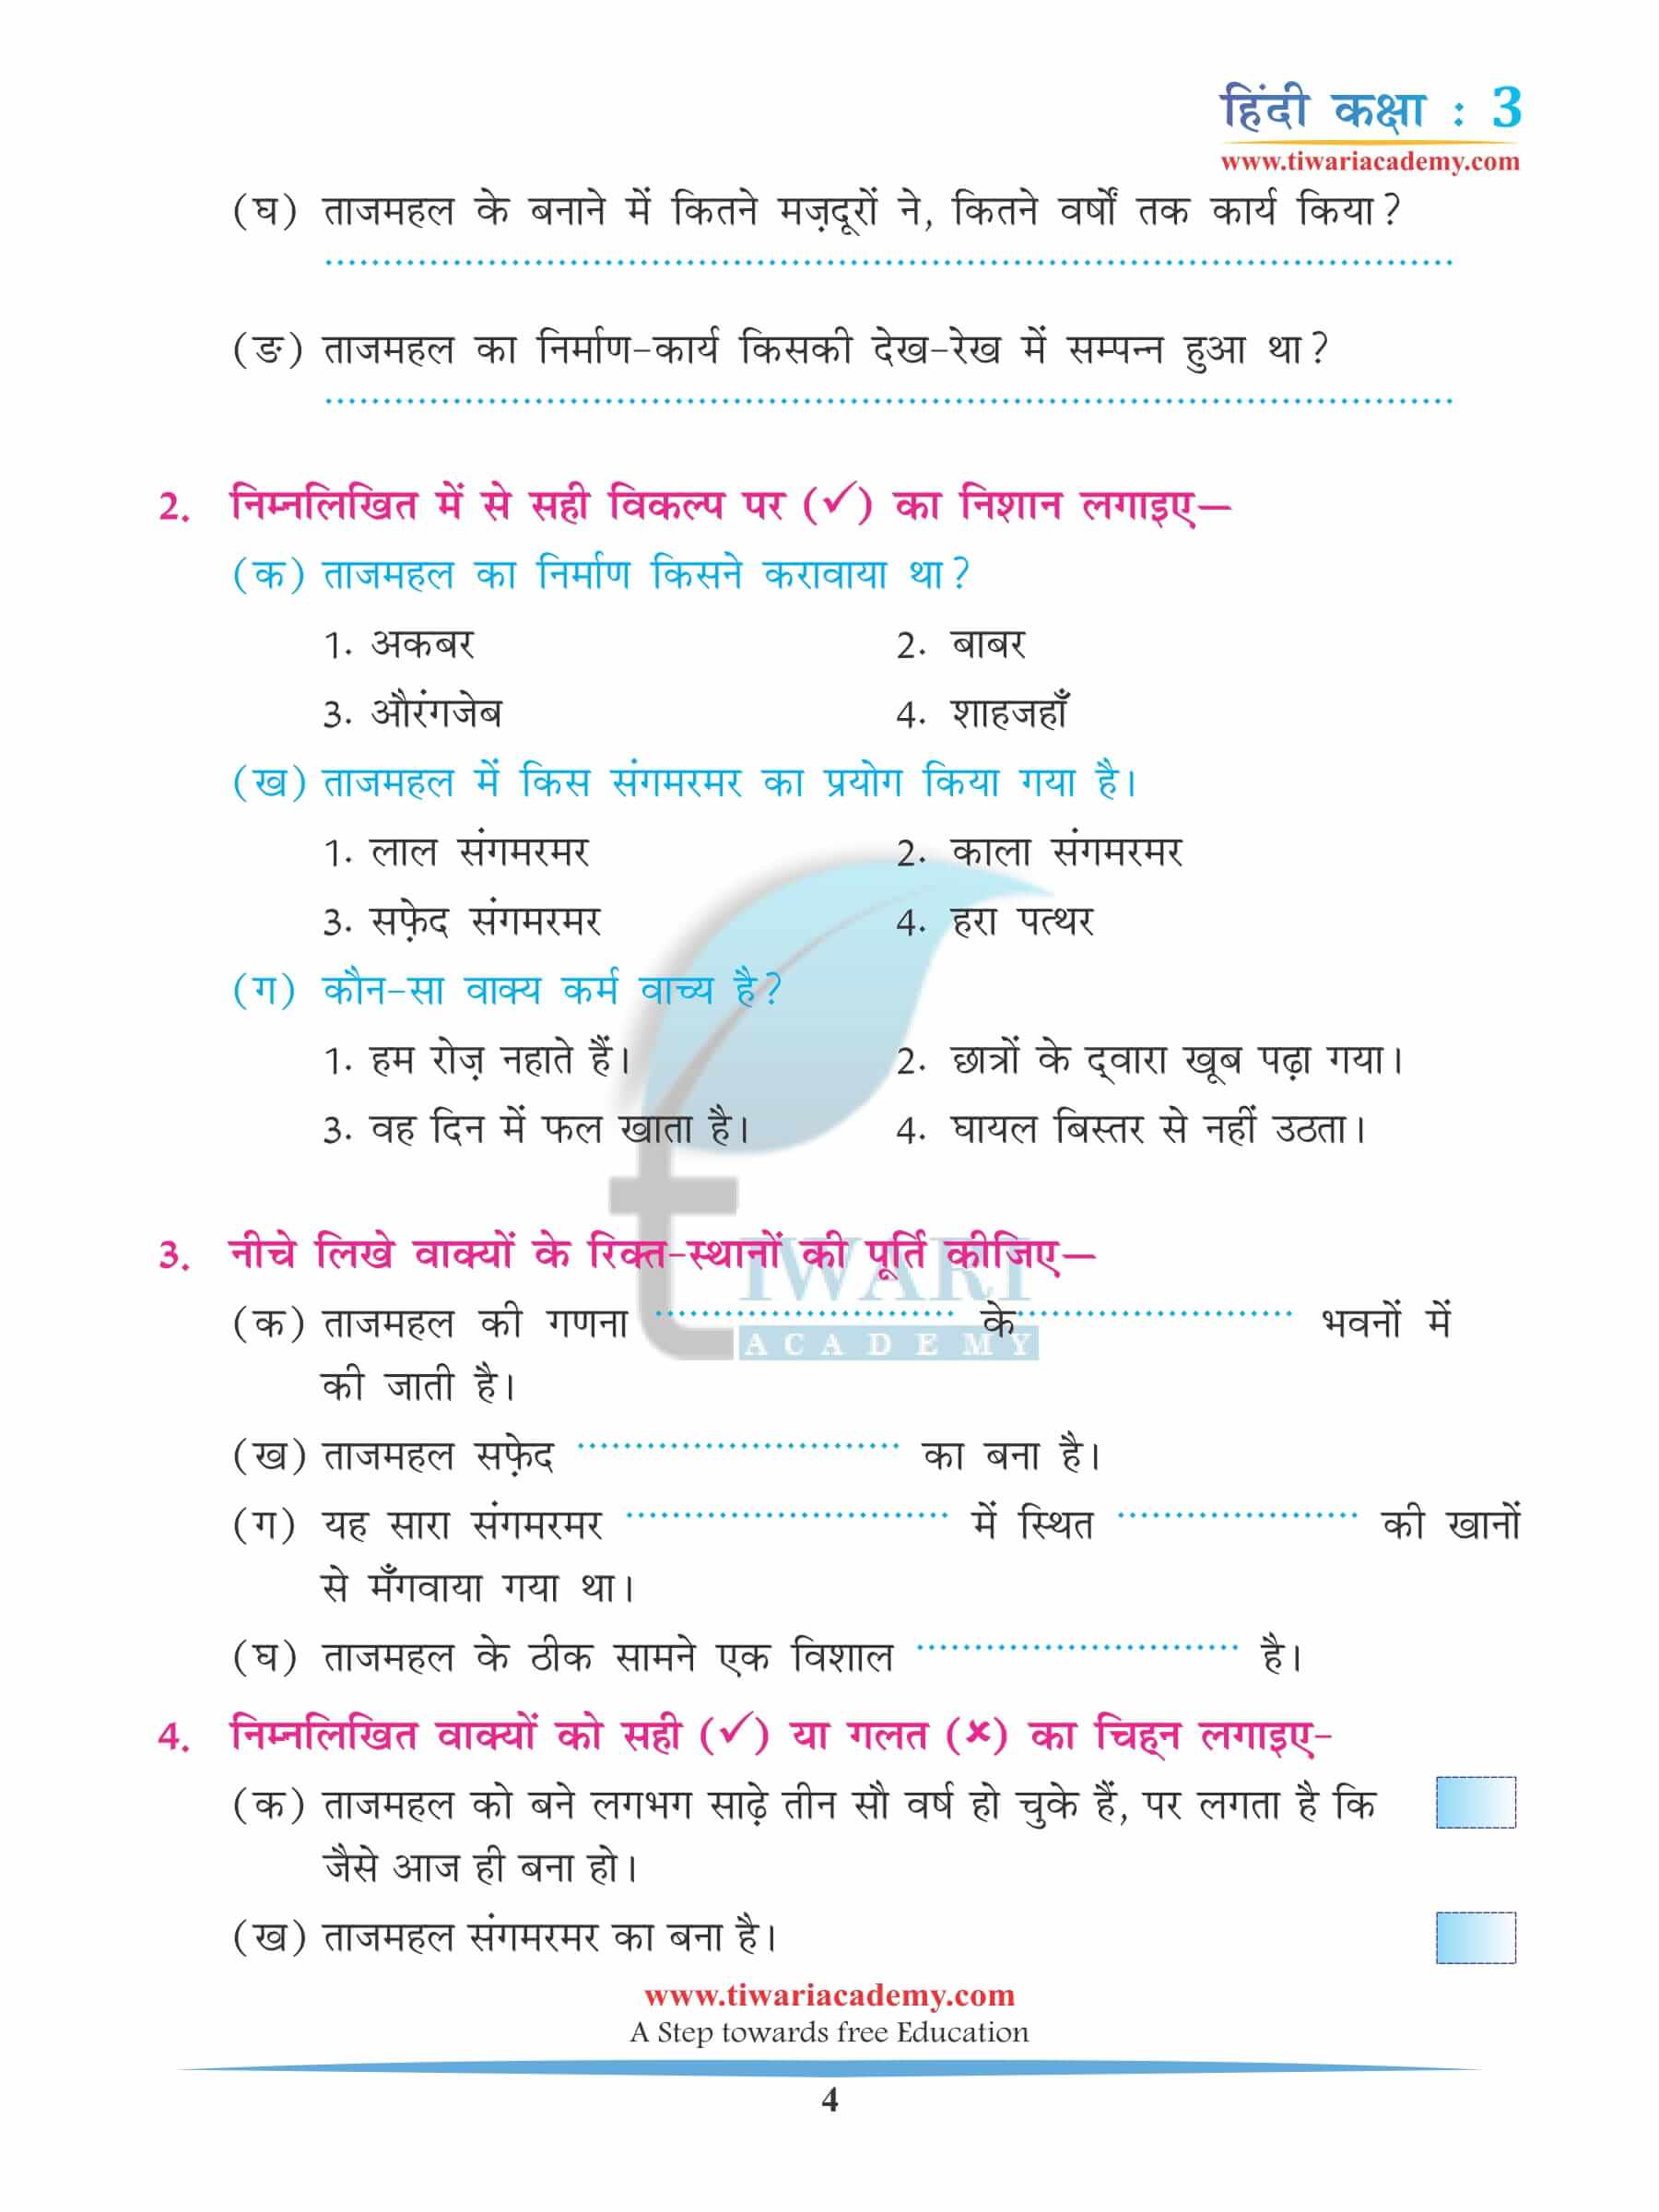 कक्षा 3 हिंदी अध्याय 7 अभ्यास के उत्तर